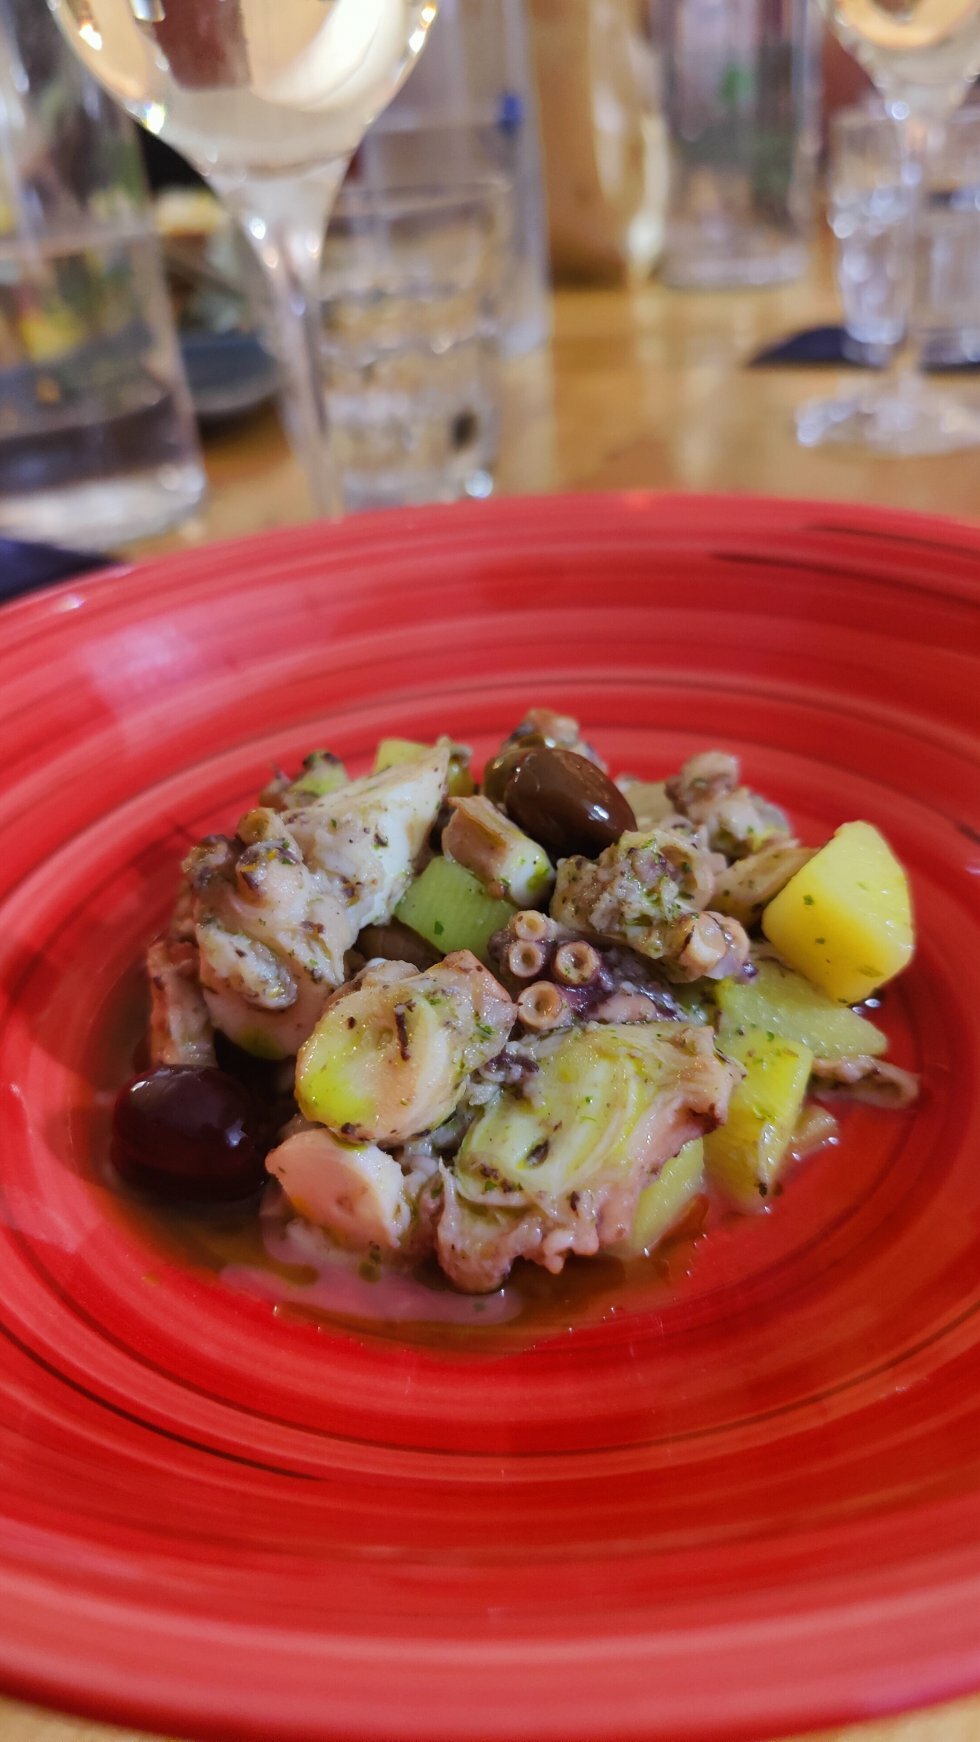 Blæksprutte med oliven og kartofler. - Rejsereportage: Ligurien - hjertet af Italiens olivenolie-region